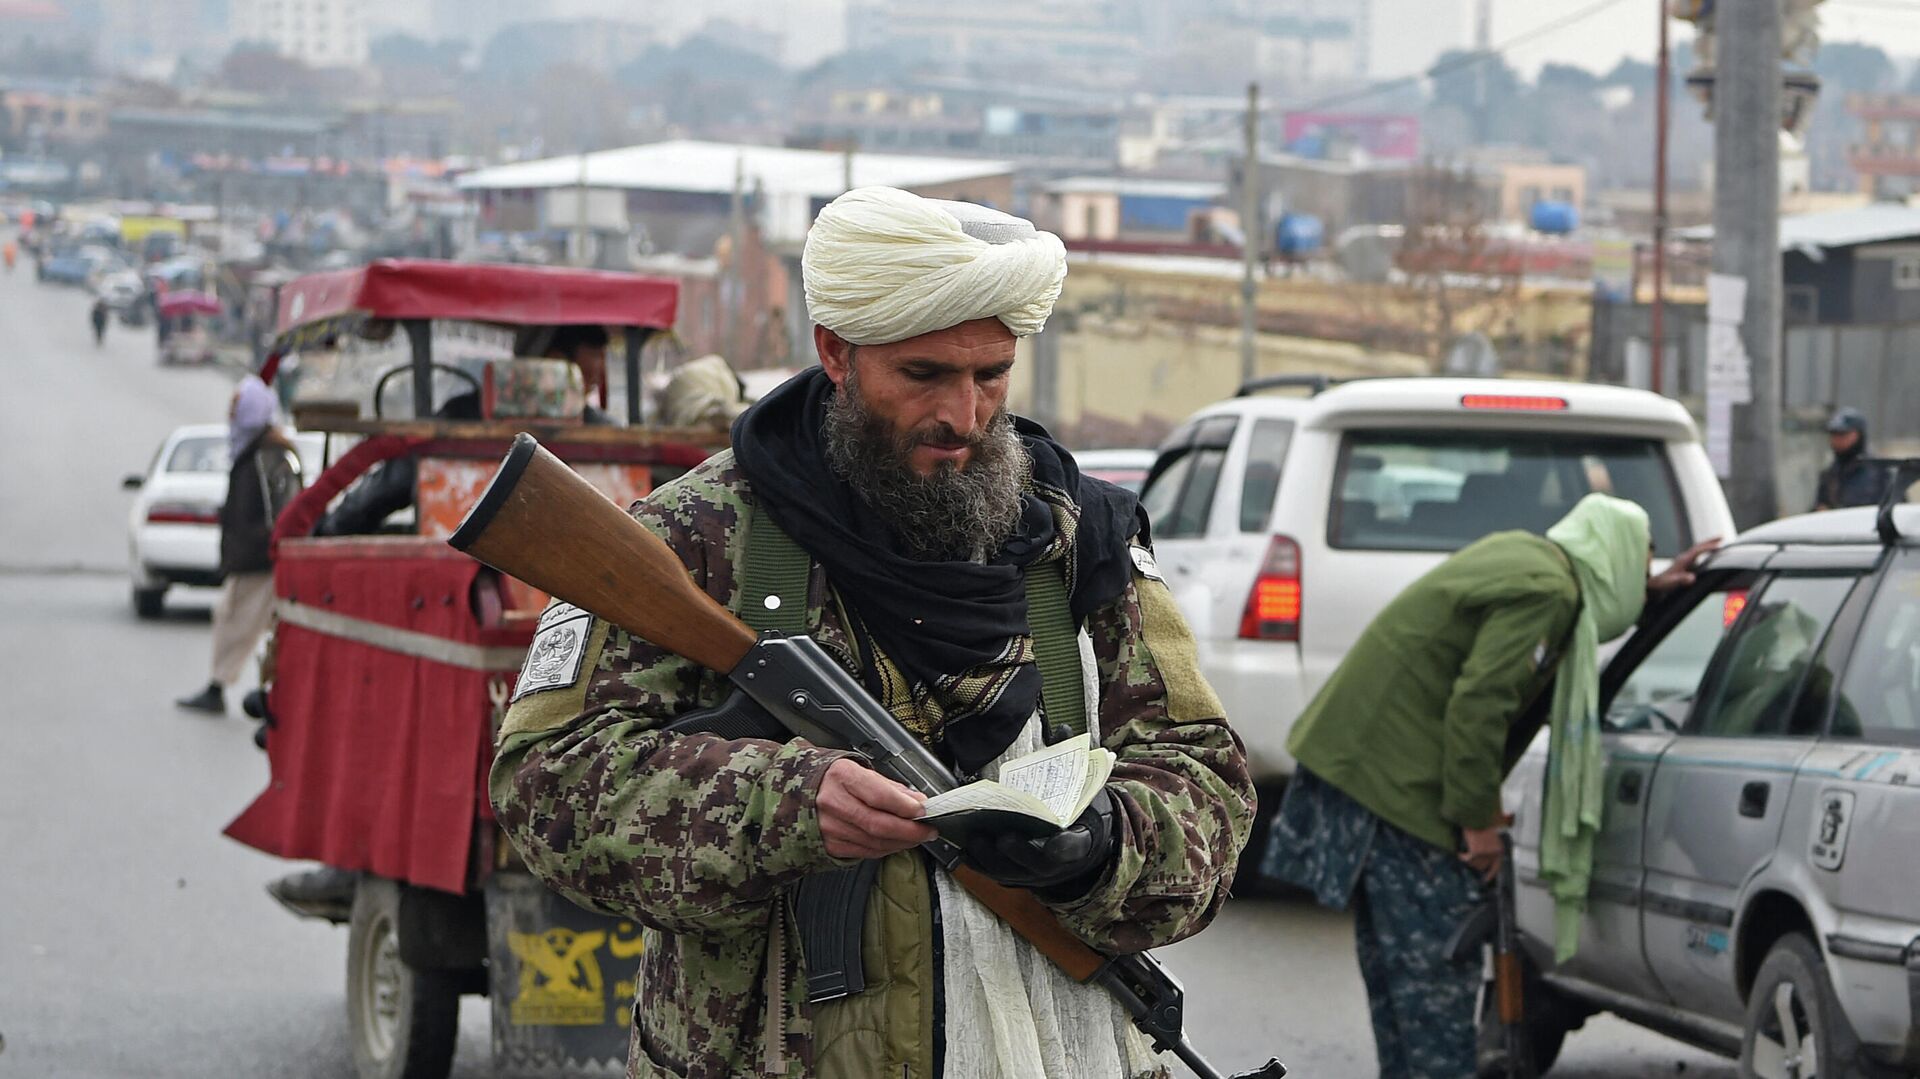 Член Талибана проверяет документ автомобилиста на блокпосту в Кабуле 23 декабря 2021 года. - Sputnik Azərbaycan, 1920, 03.01.2022